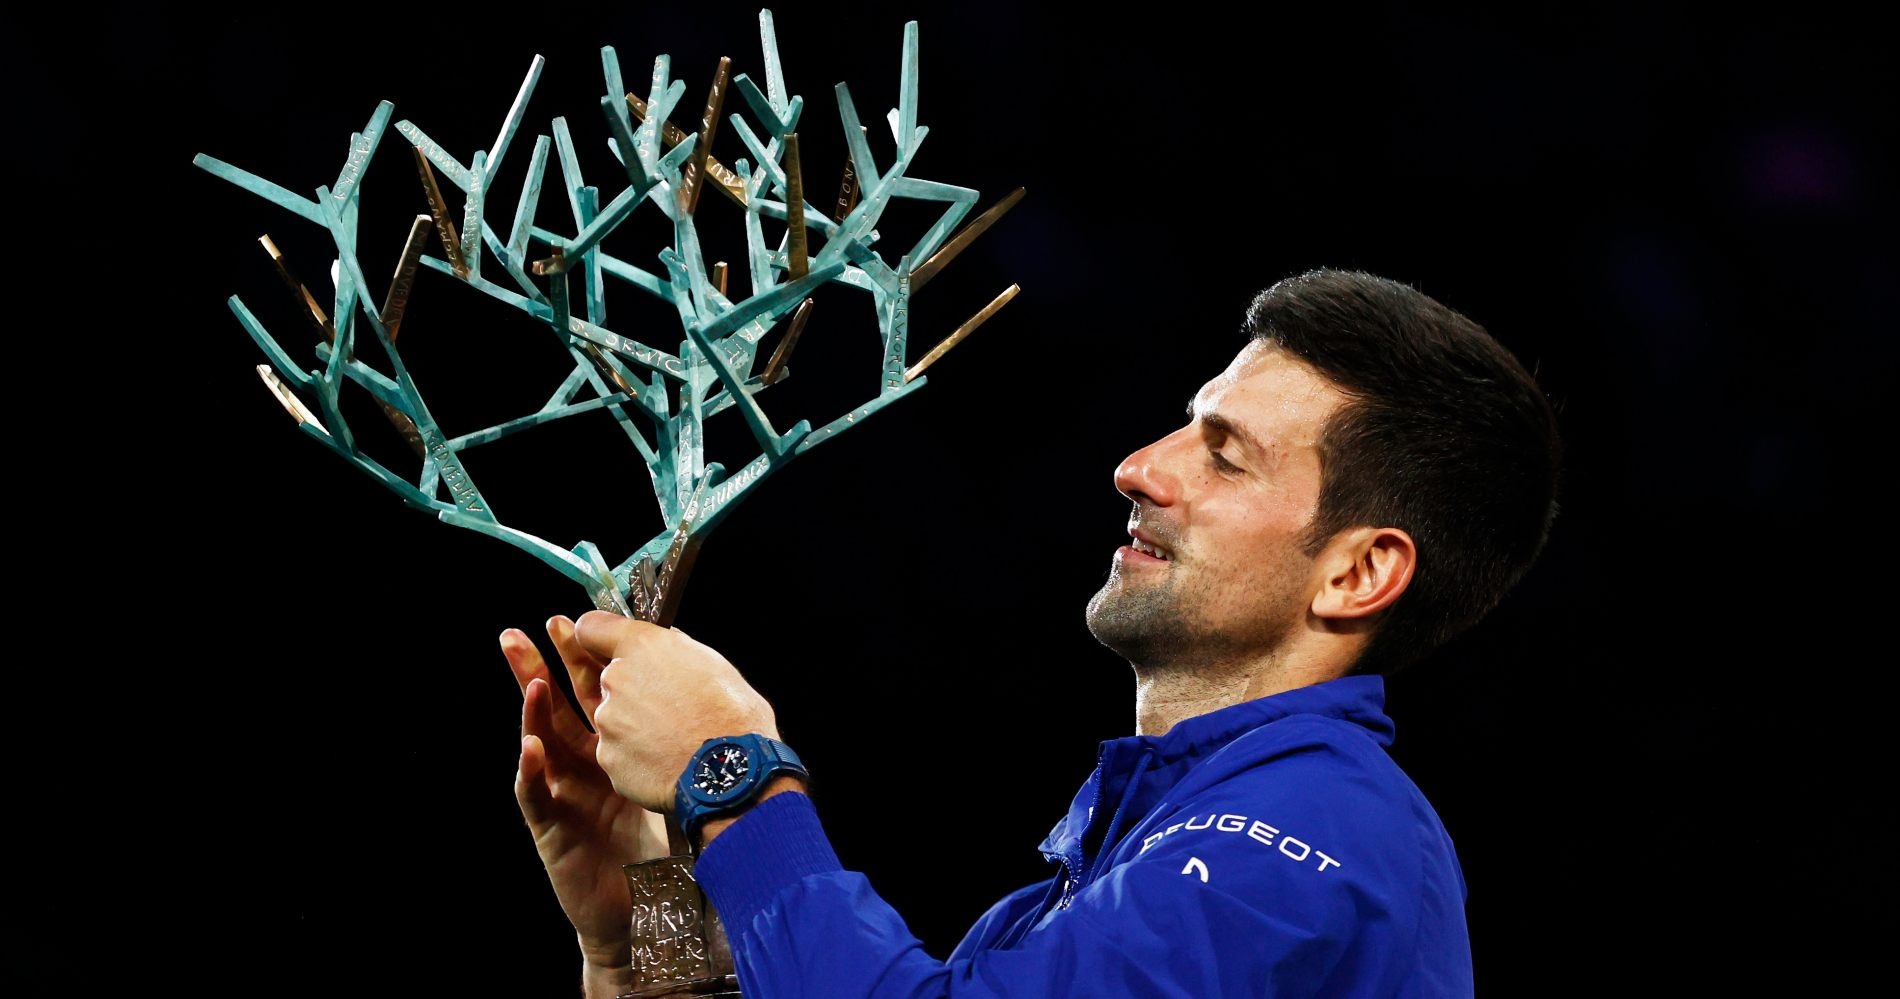 Paris masters 2021 rolex Djokovic Poised